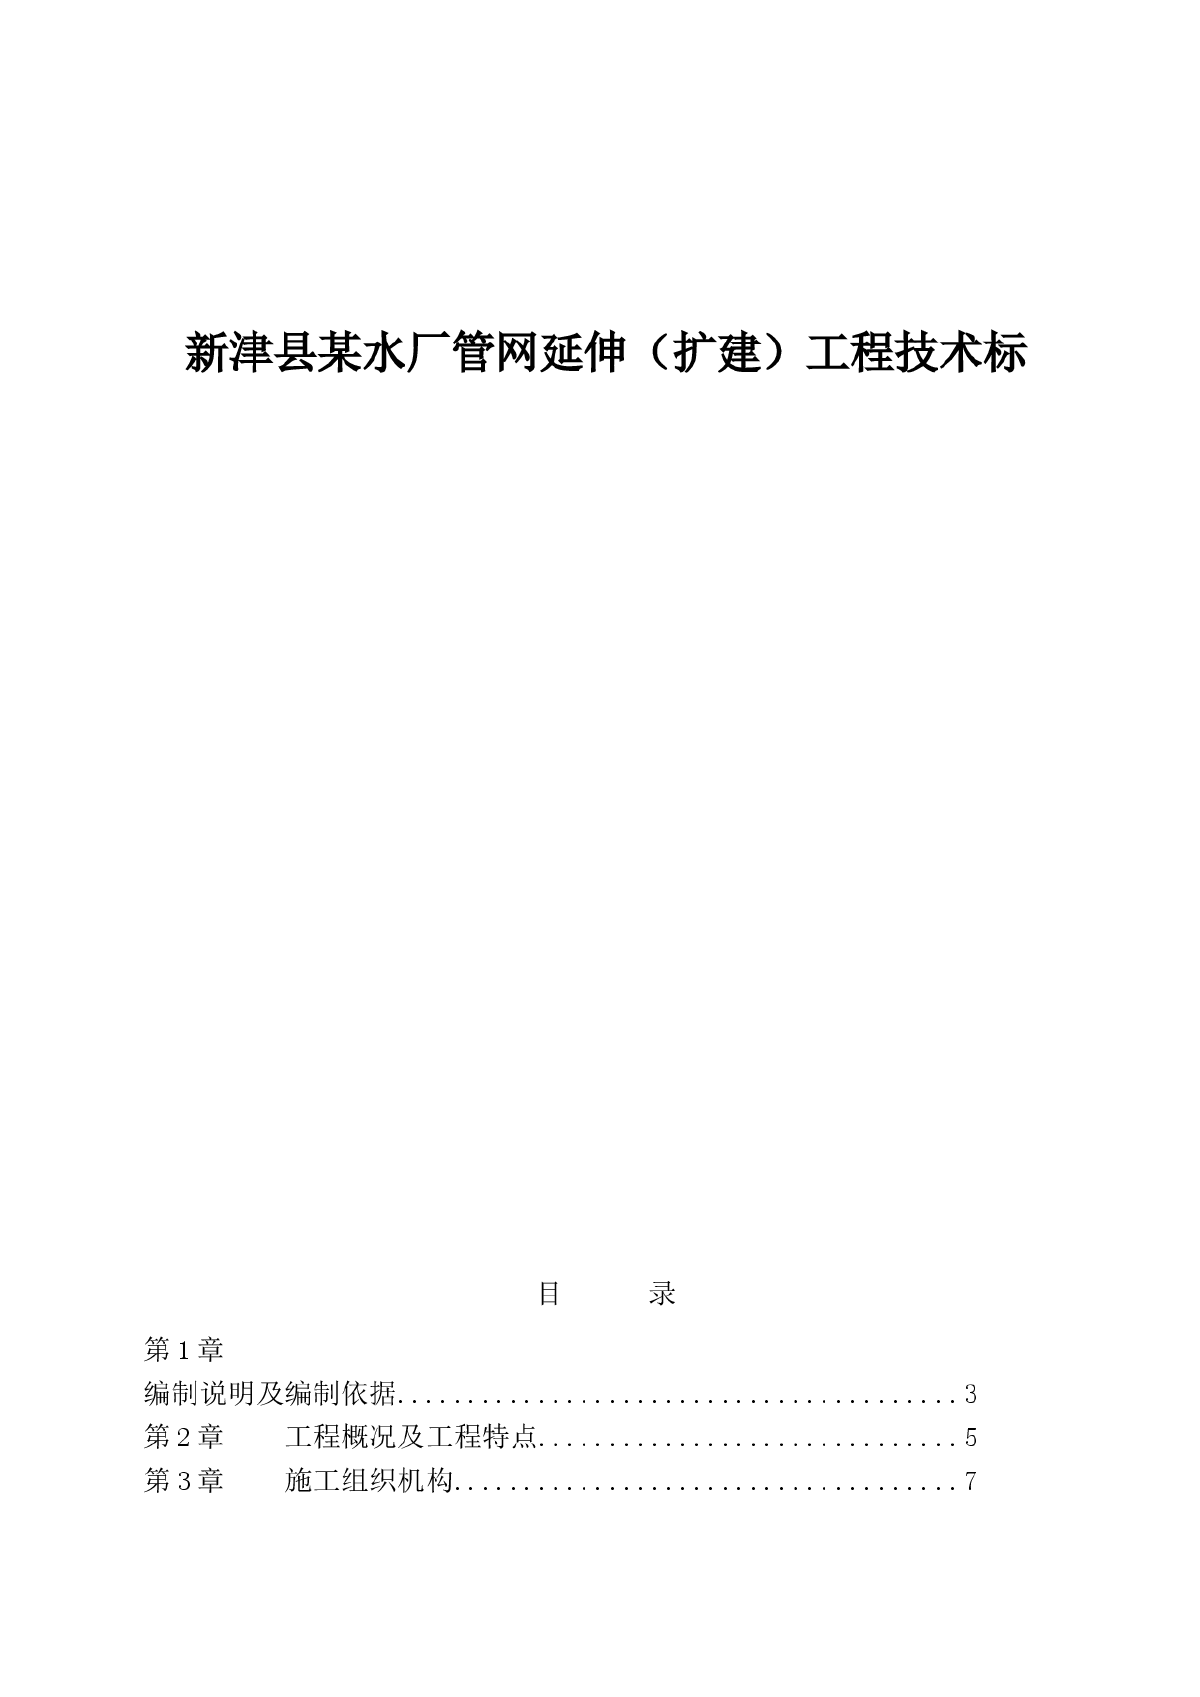 新津县某水厂管网延伸（扩建）工程技术标